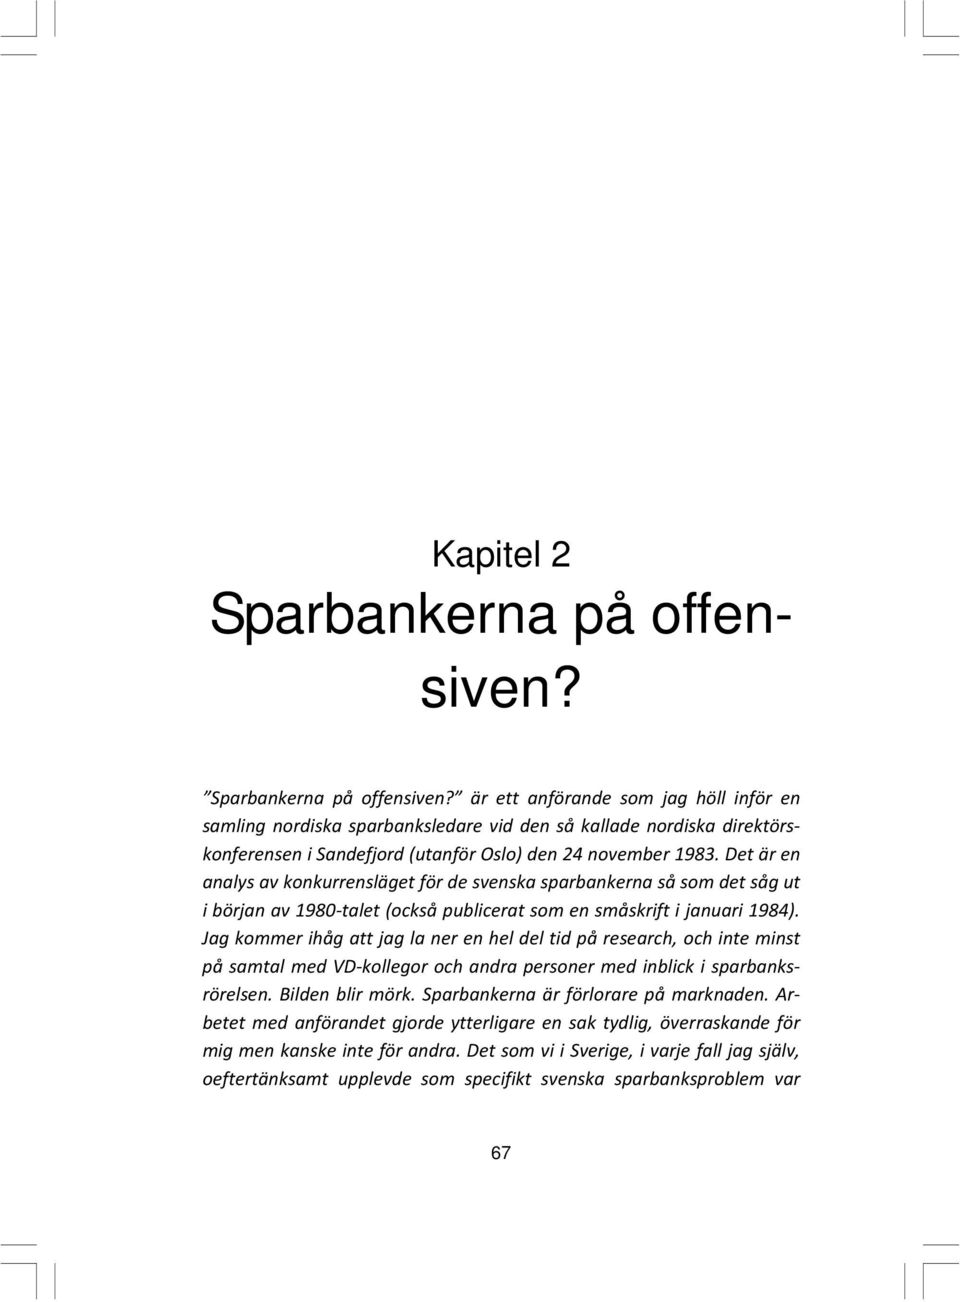 Det är en analys av konkurrensläget för de svenska sparbankerna så som det såg ut i början av 1980-talet (också publicerat som en småskrift i januari 1984).